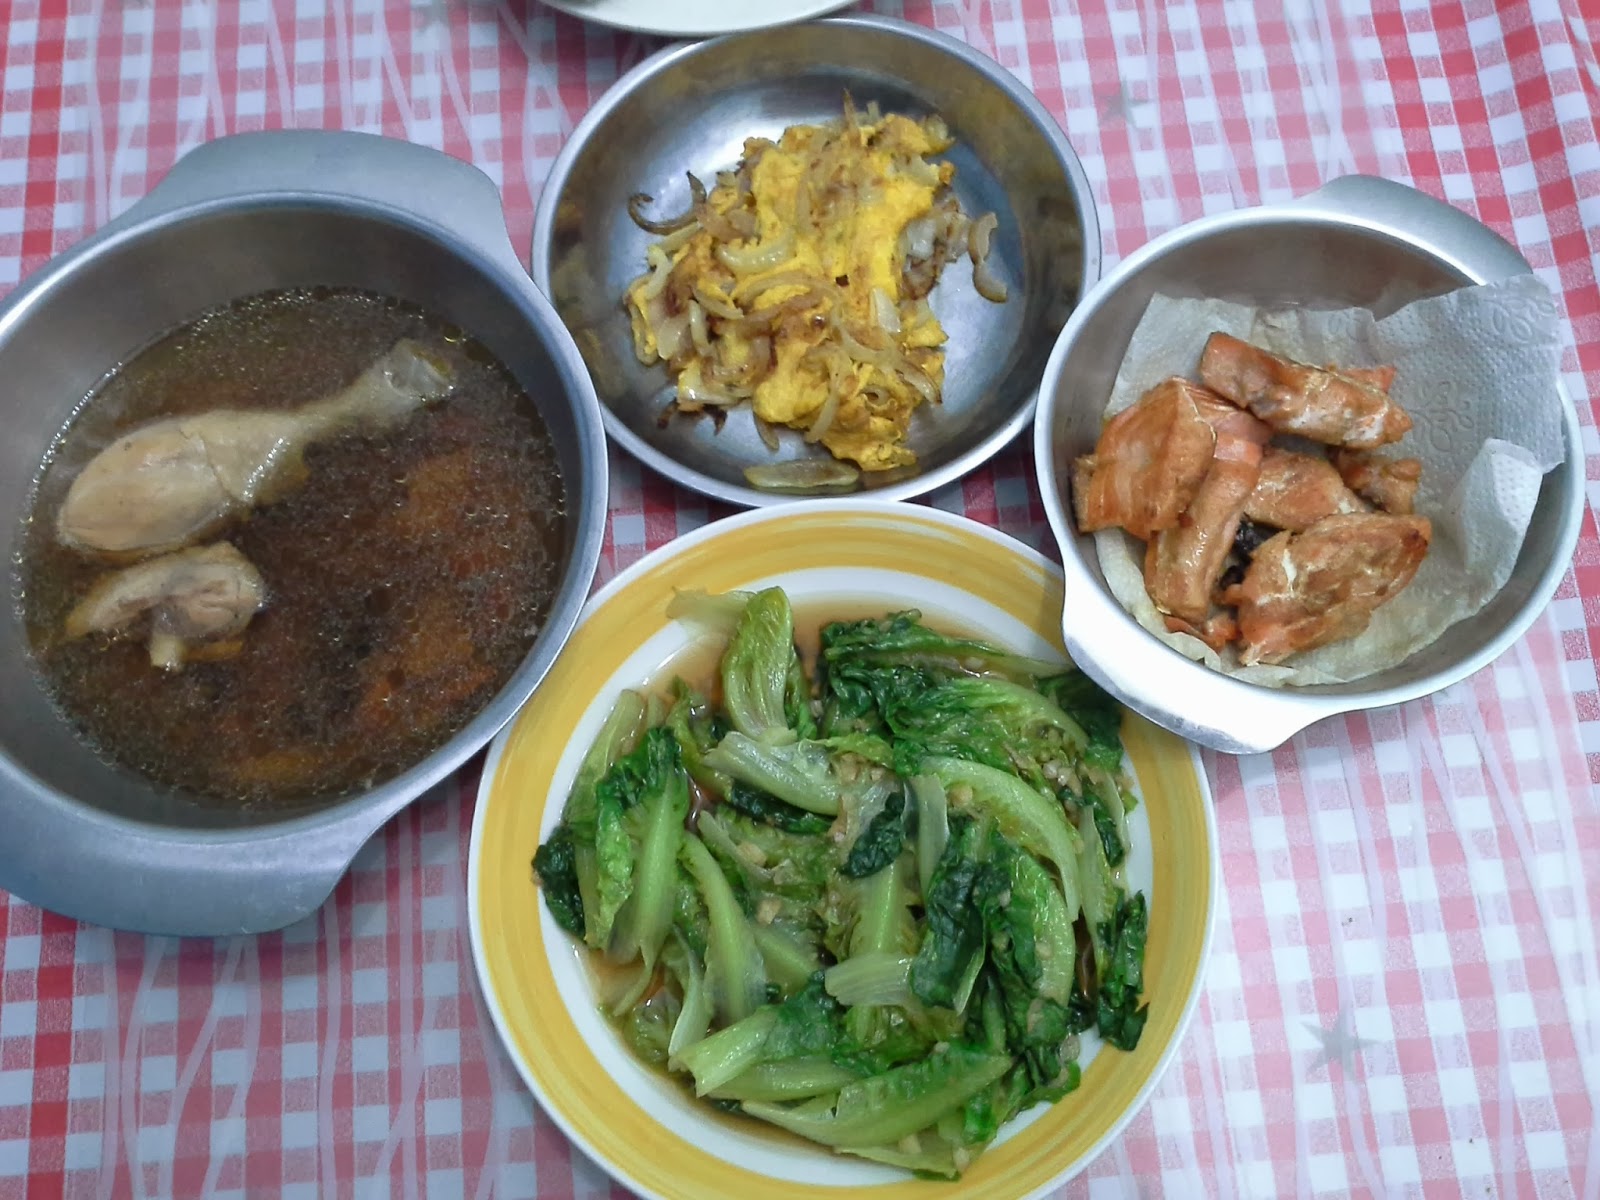 亚洲中国家常便饭式地膳食 库存图片. 图片 包括有 局部, 批次, 贝蒂, 烹调, 系列, 房子, 膳食 - 64709095